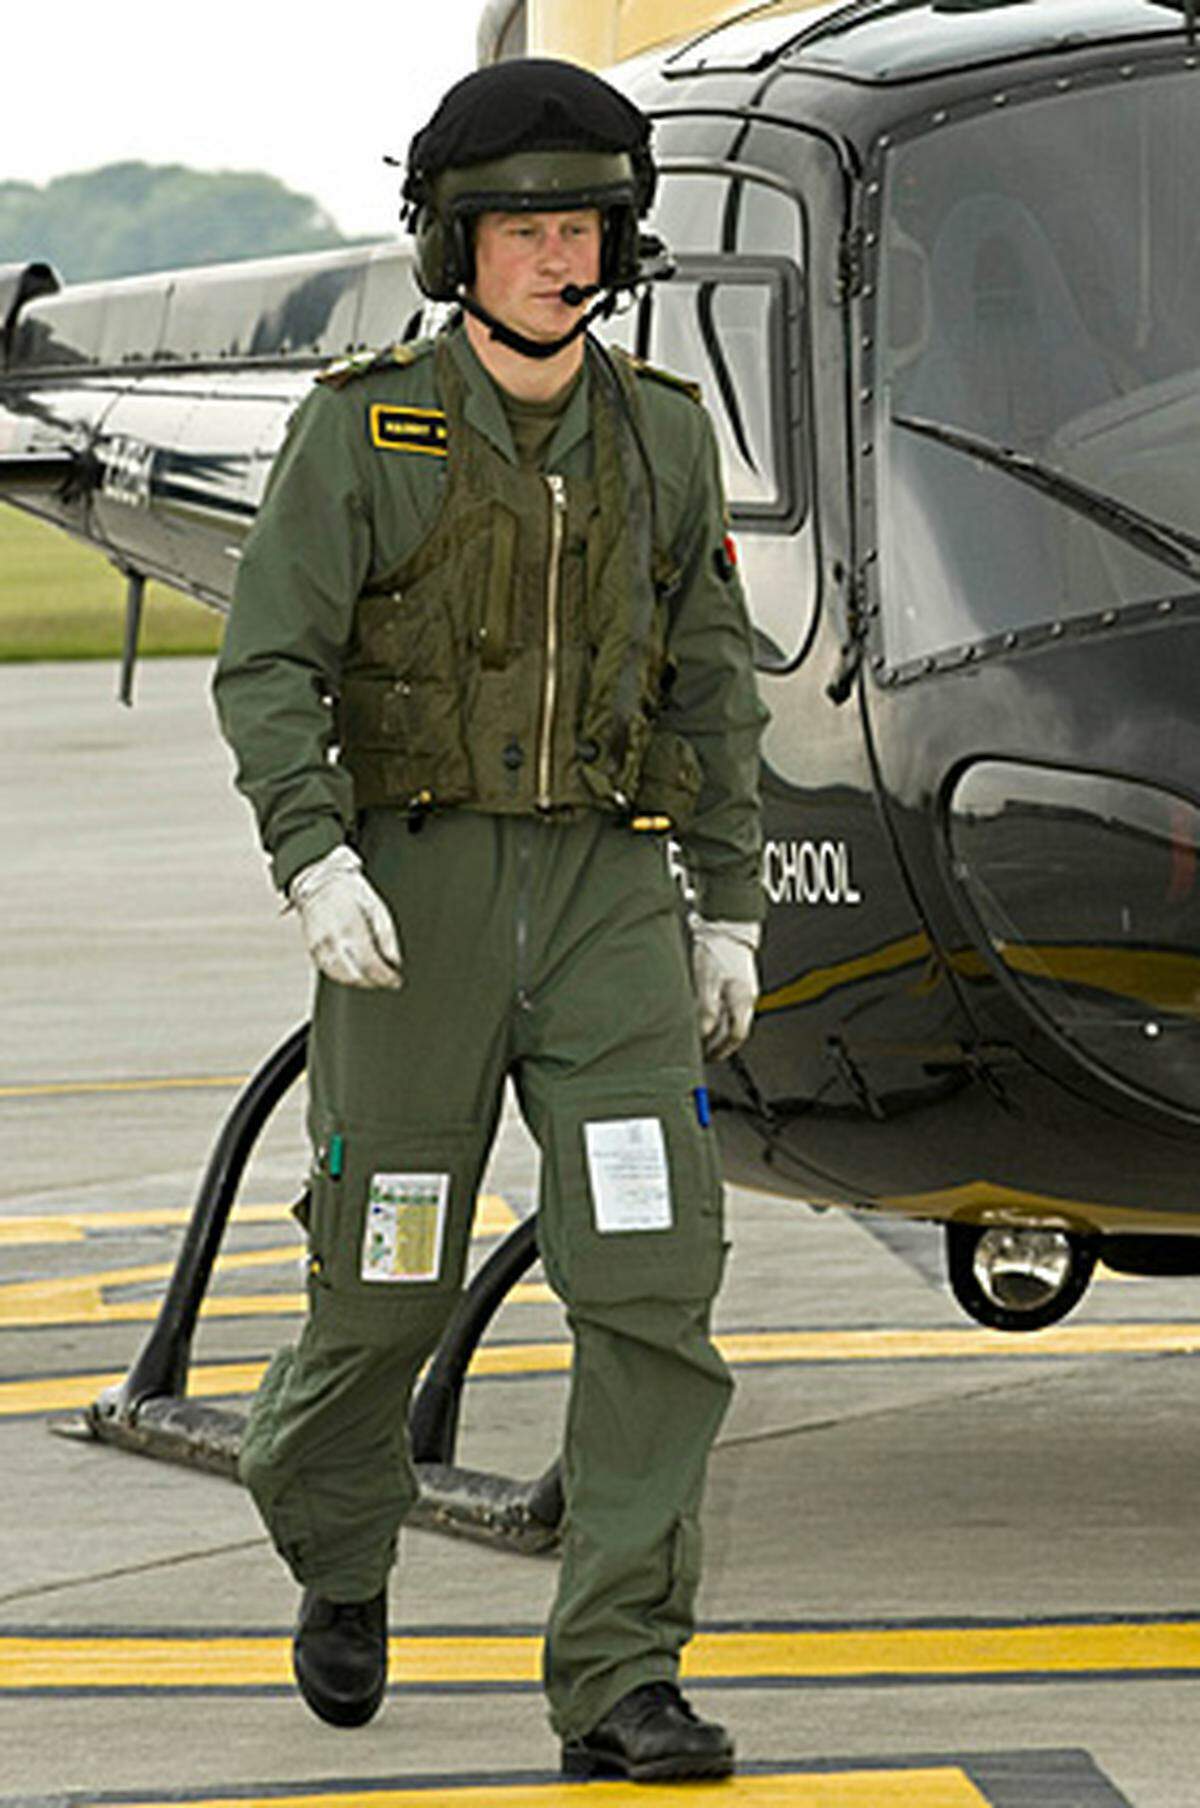 Prinz Harry hat bei seiner Ausbildung zum Hubschrauber-Piloten der britischen Armee eine weitere Hürde genommen. Die Nummer drei der Thronfolge bestand erfolgreich eine erste grundlegende Praxisprüfung. Er meisterte die Anforderungen bei Start, Landung sowie bei verschiedenen simulierten Notfällen und kann nun die weiterführende Praxisausbildung anschließen, berichtete die "Daily Mail". Nach einer letzten Trainingsphase soll Harry die Ausbildung im März abschließen.